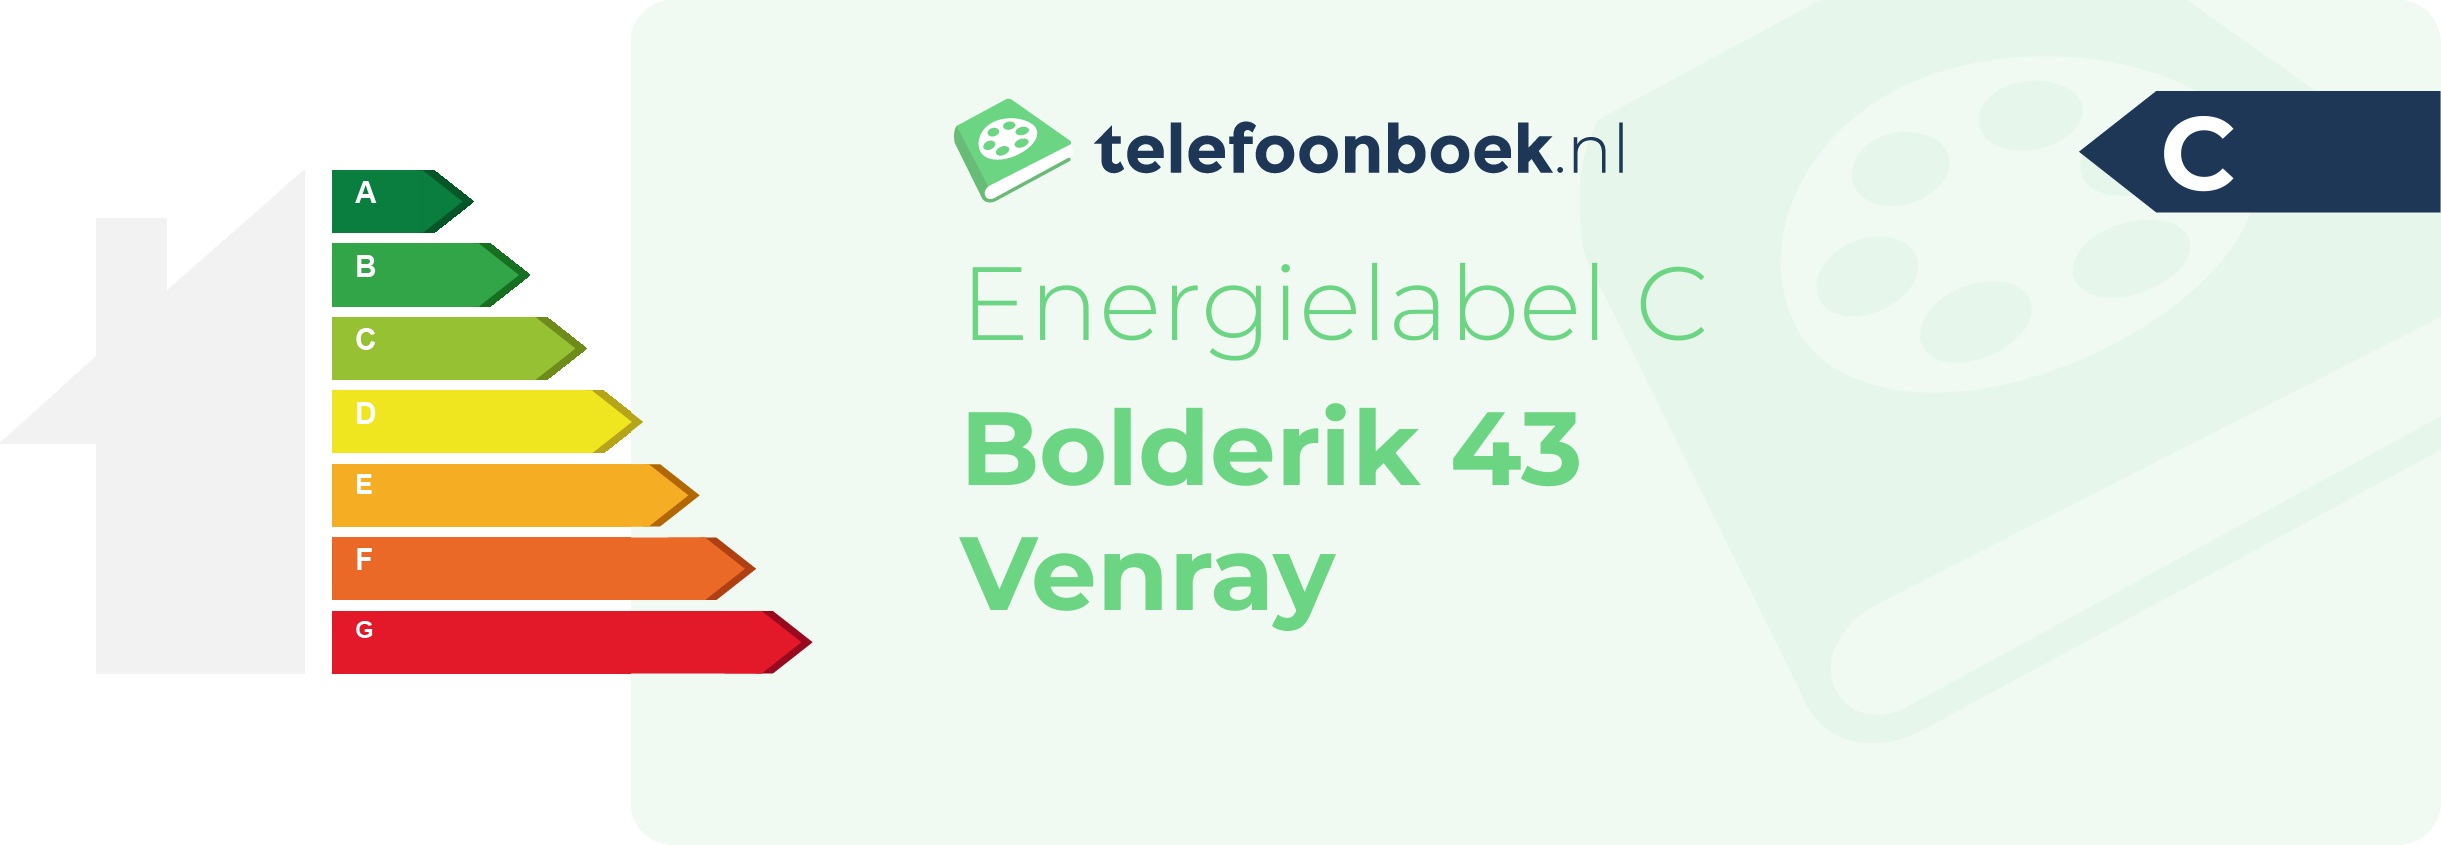 Energielabel Bolderik 43 Venray